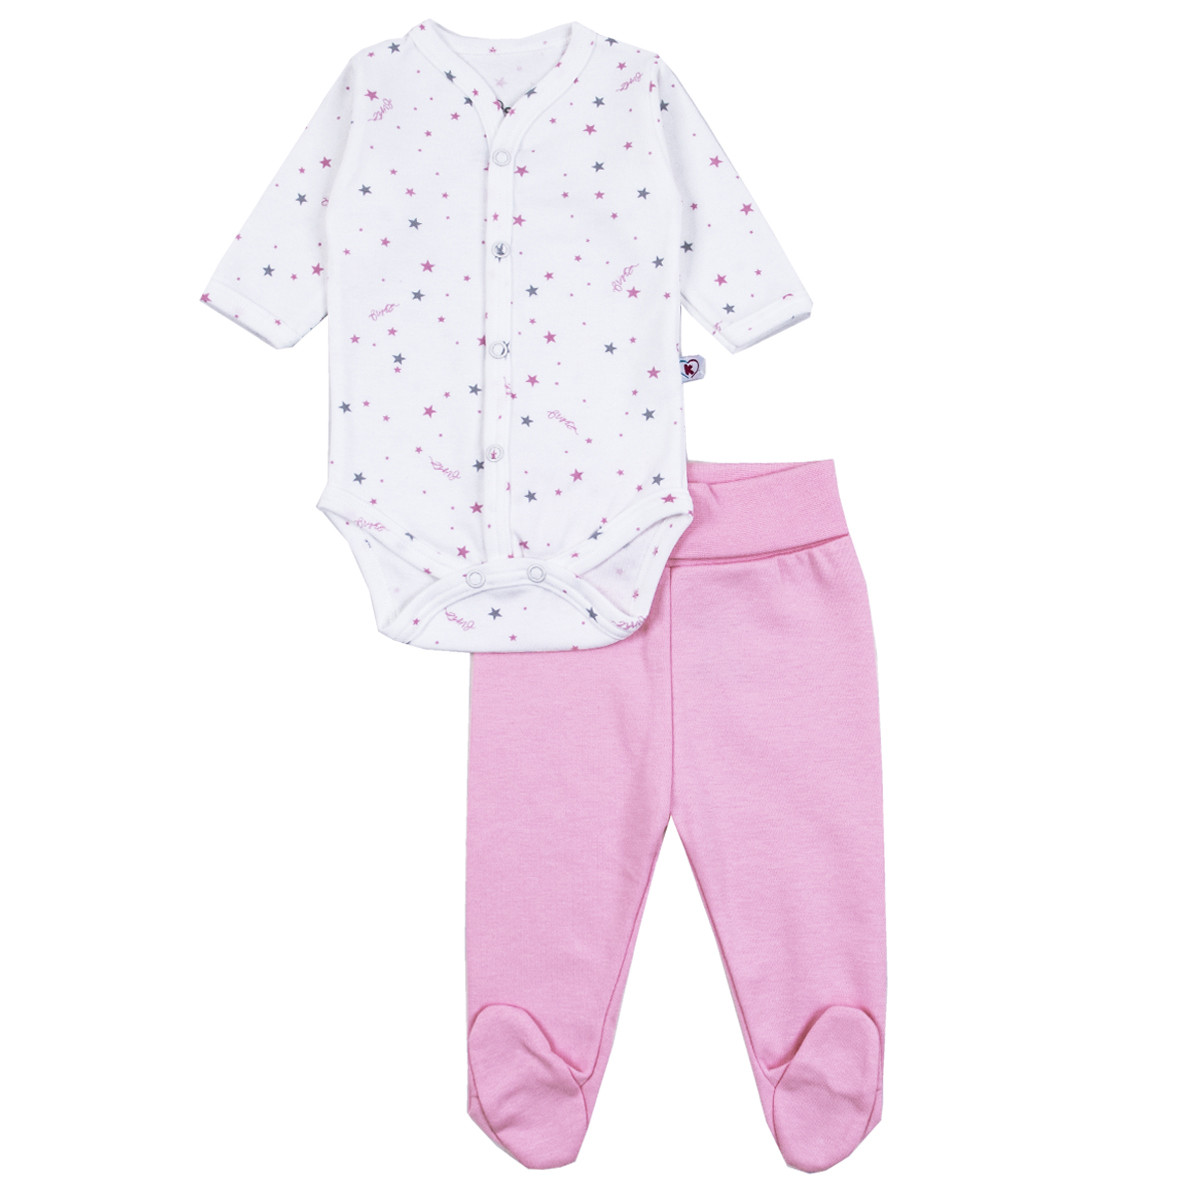 Бебешки памучен комплект "Stars" в бяло и розово